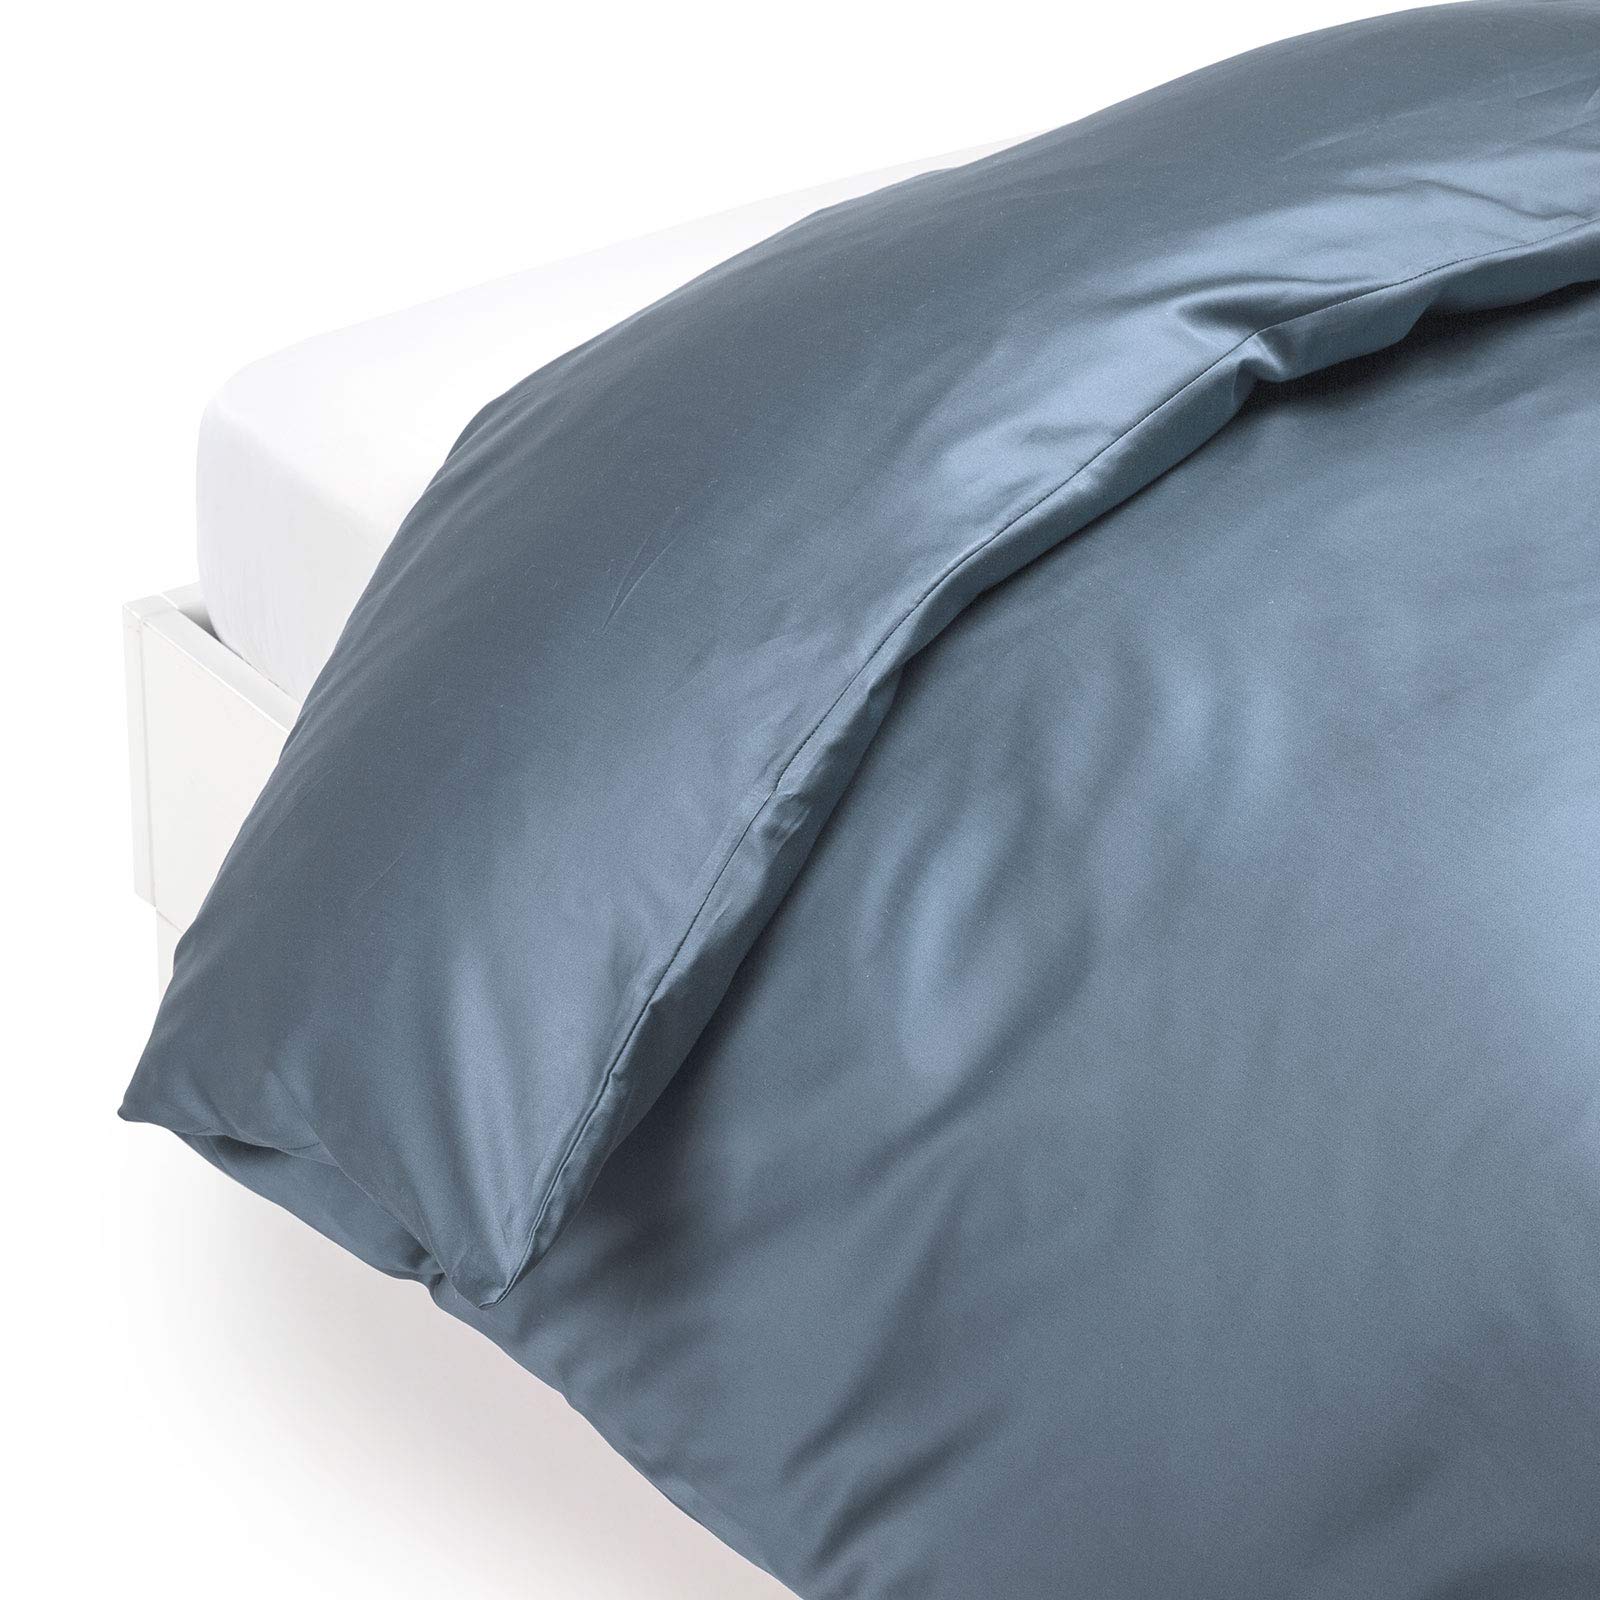 Caleffi - Bettbezug aus Satin, 100% Baumwolle, einfarbig, für Doppelbett